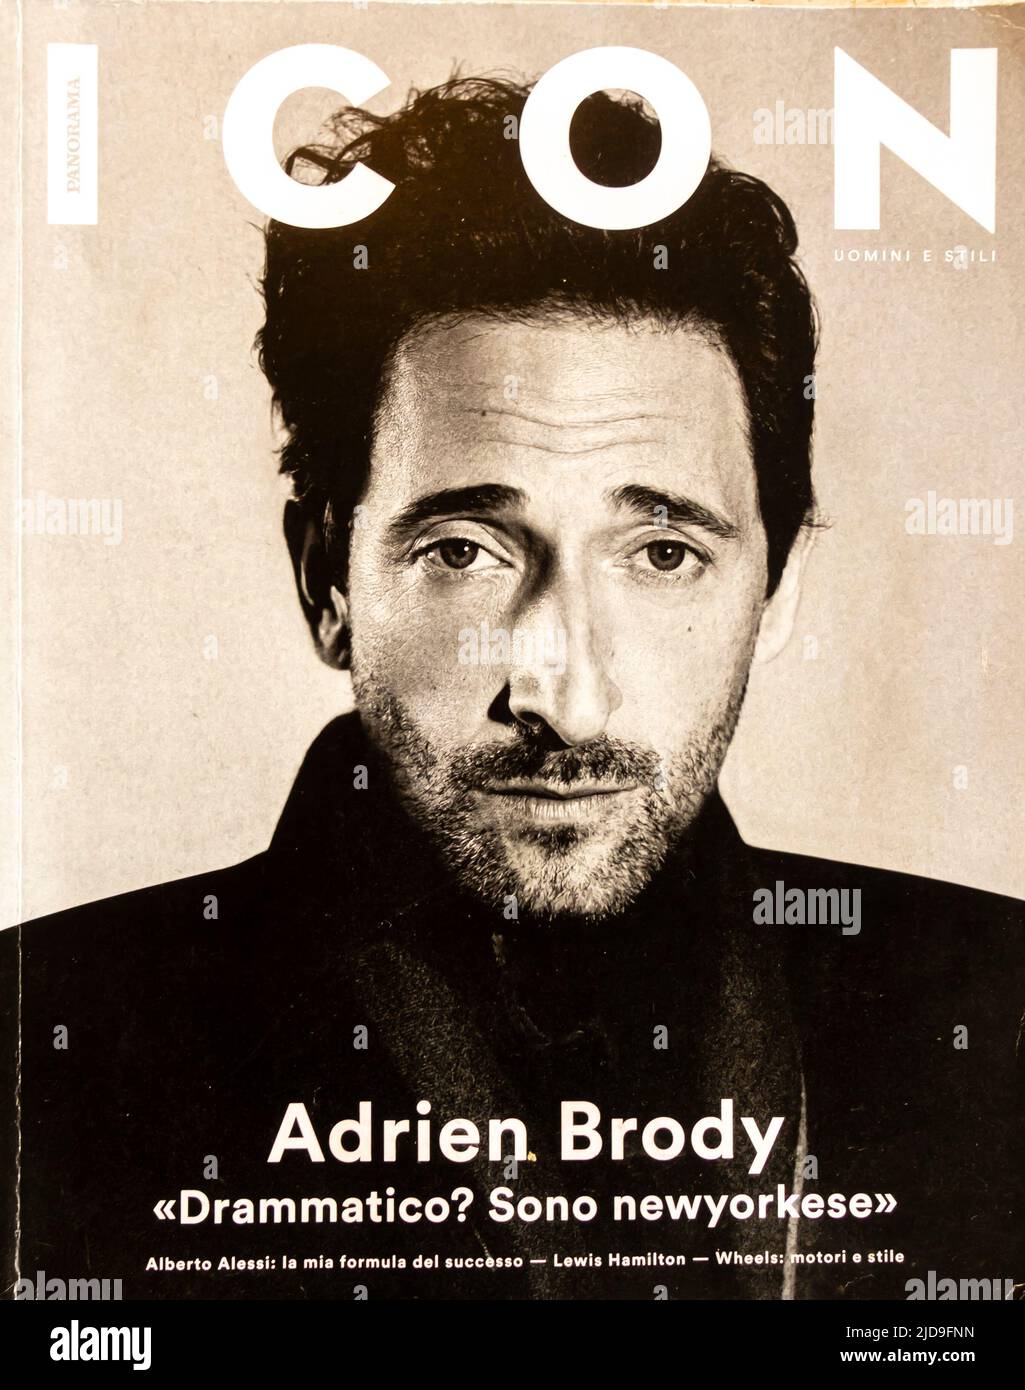 COPERTINA DELLA rivista ICON Adrien Brody Foto Stock